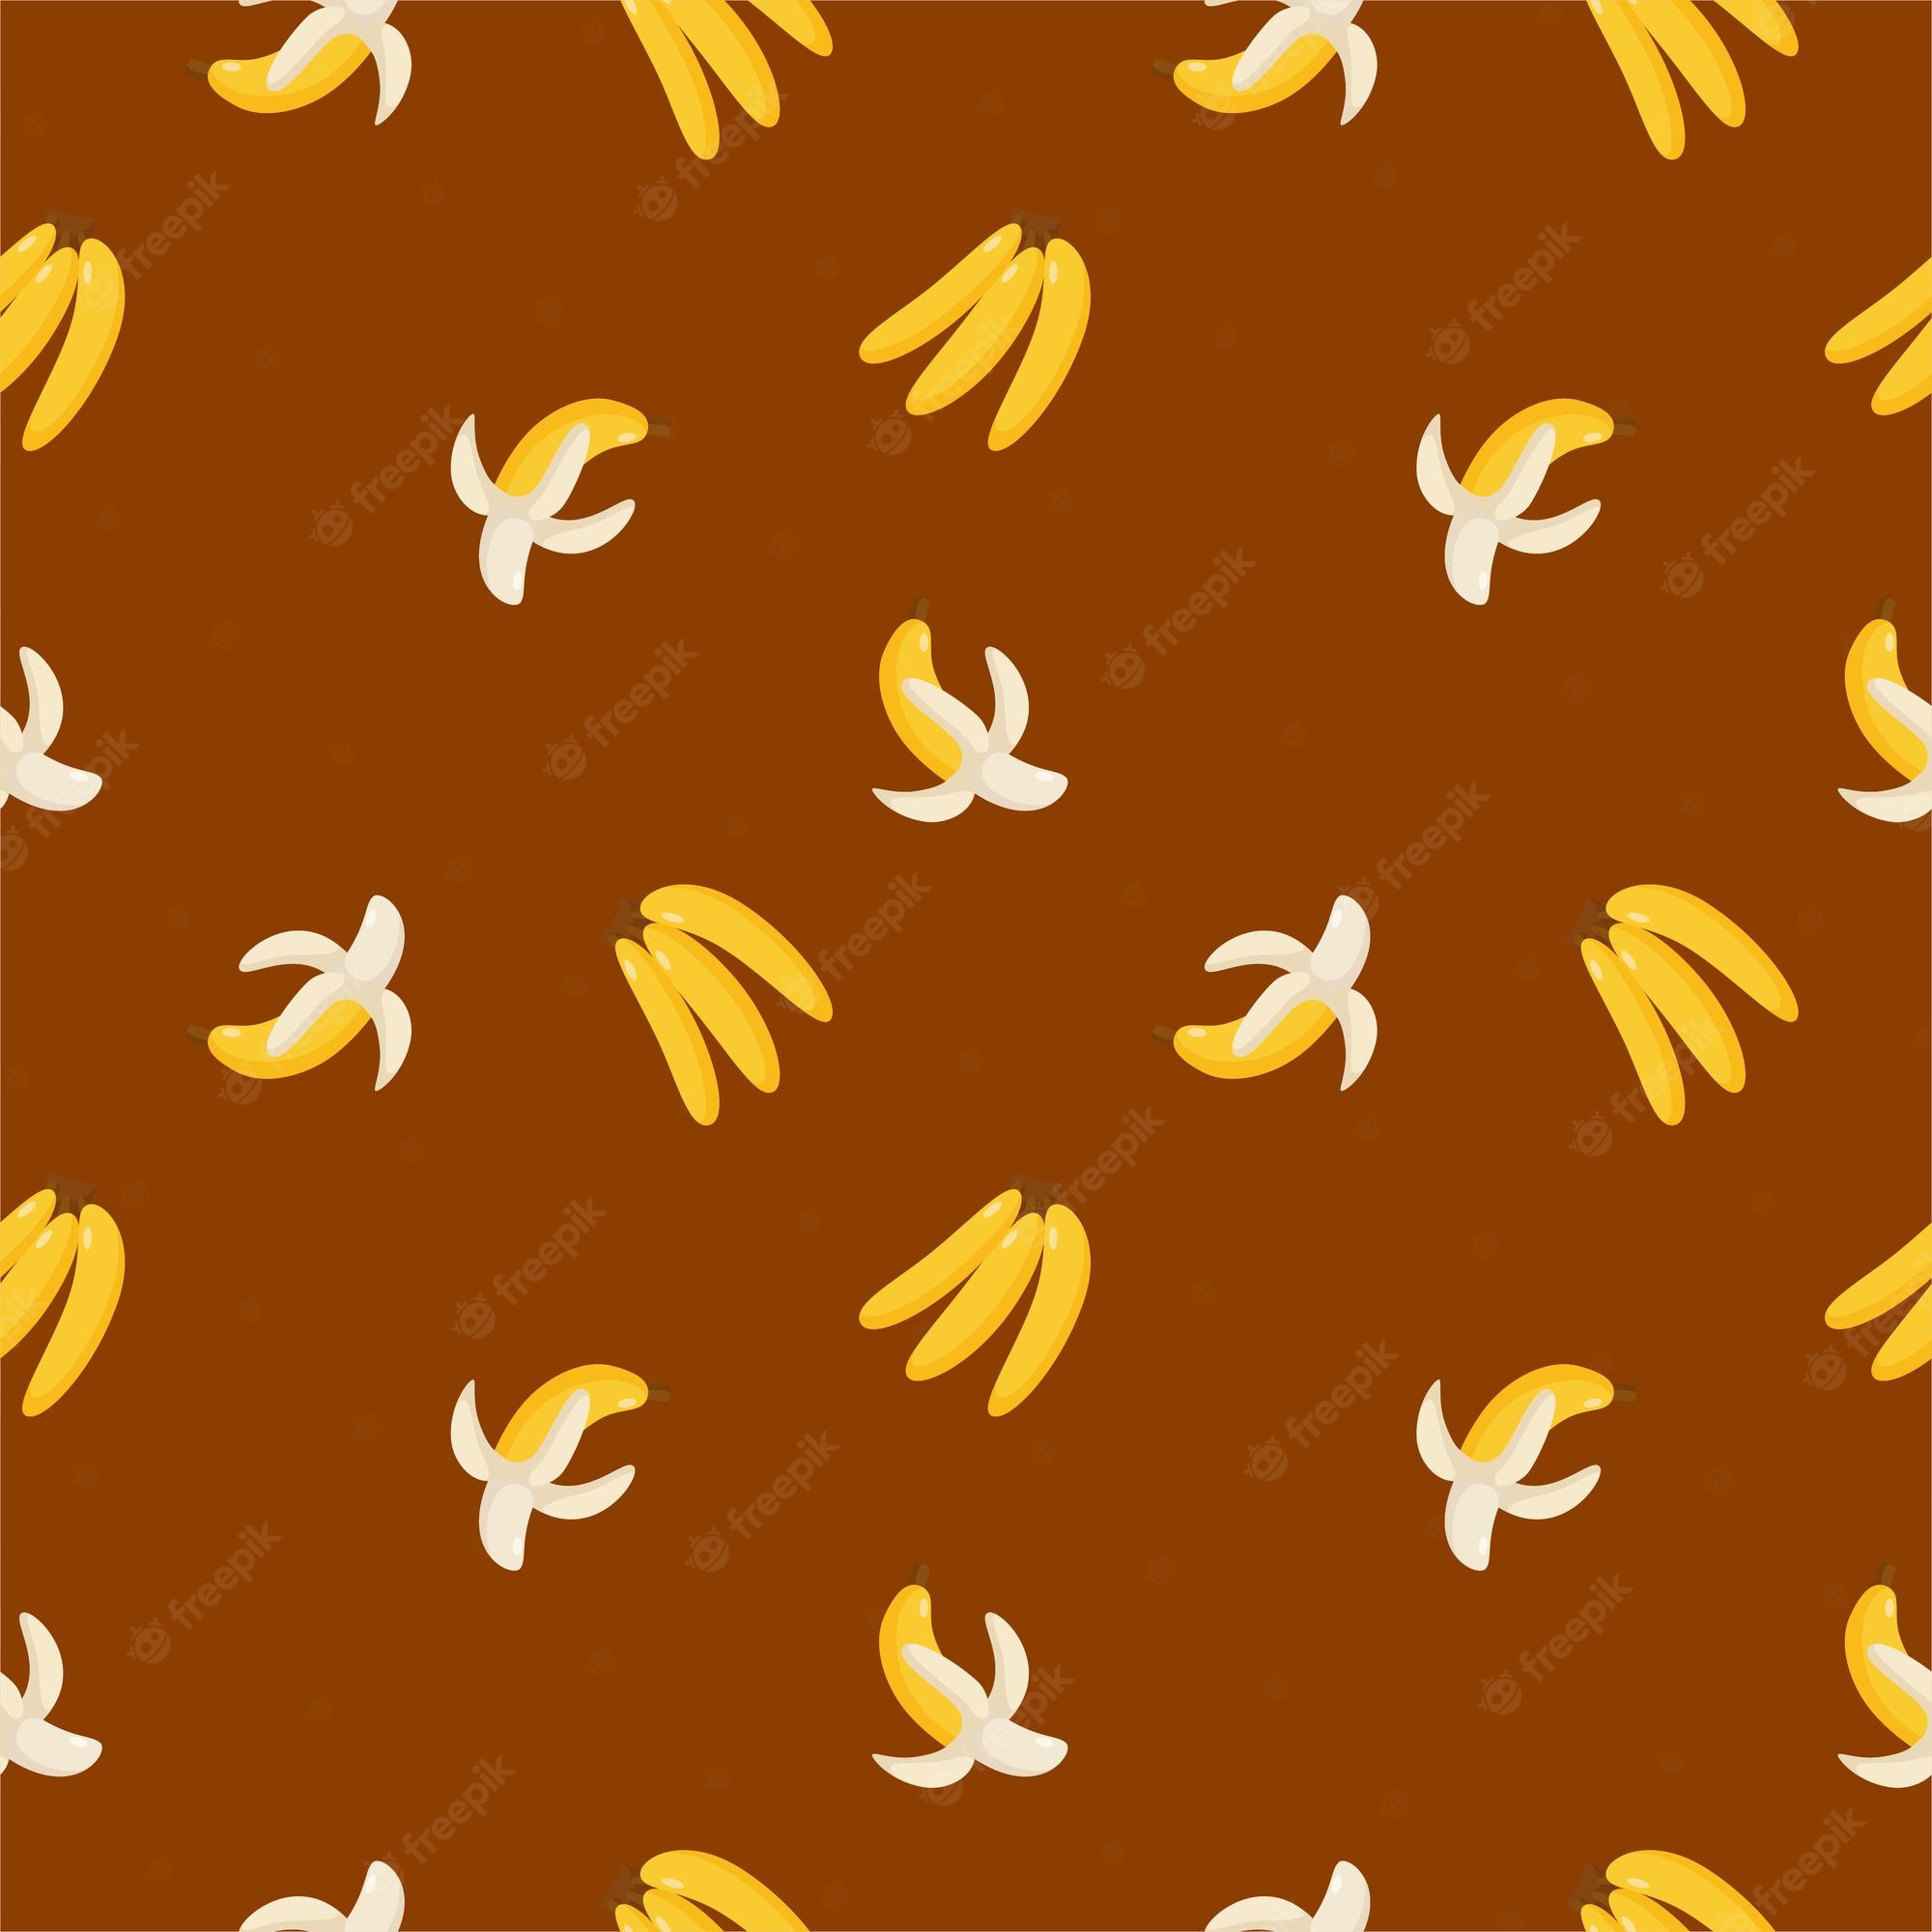 Banana Wallpaper Image